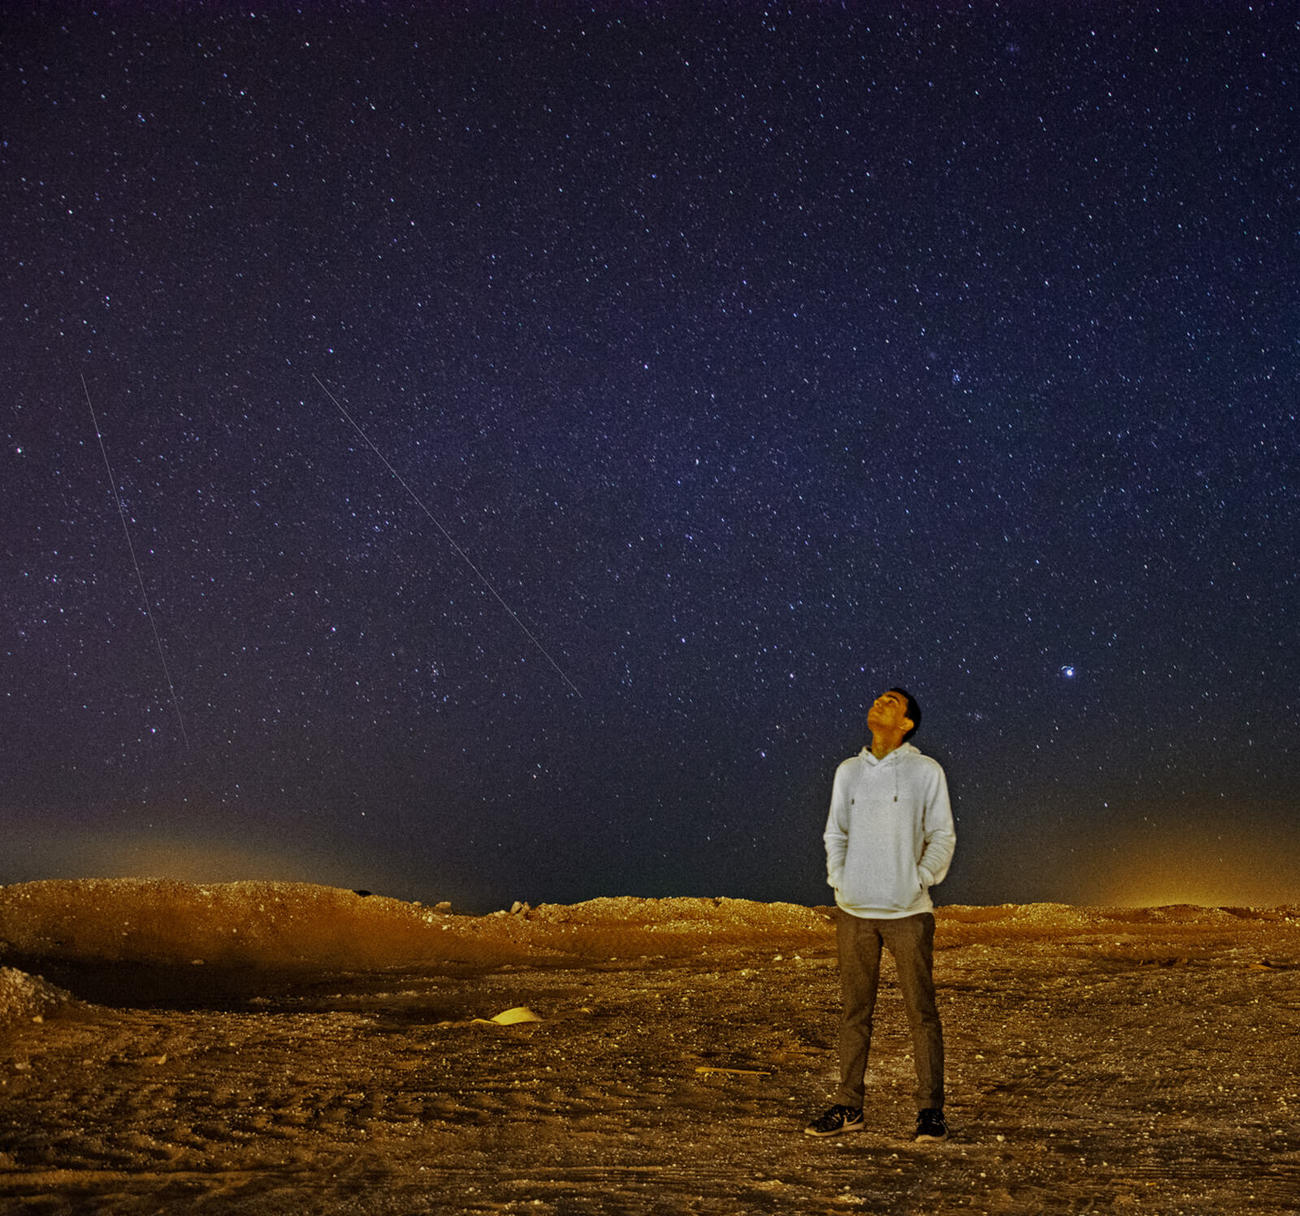 A man gazes up a star-filled sky